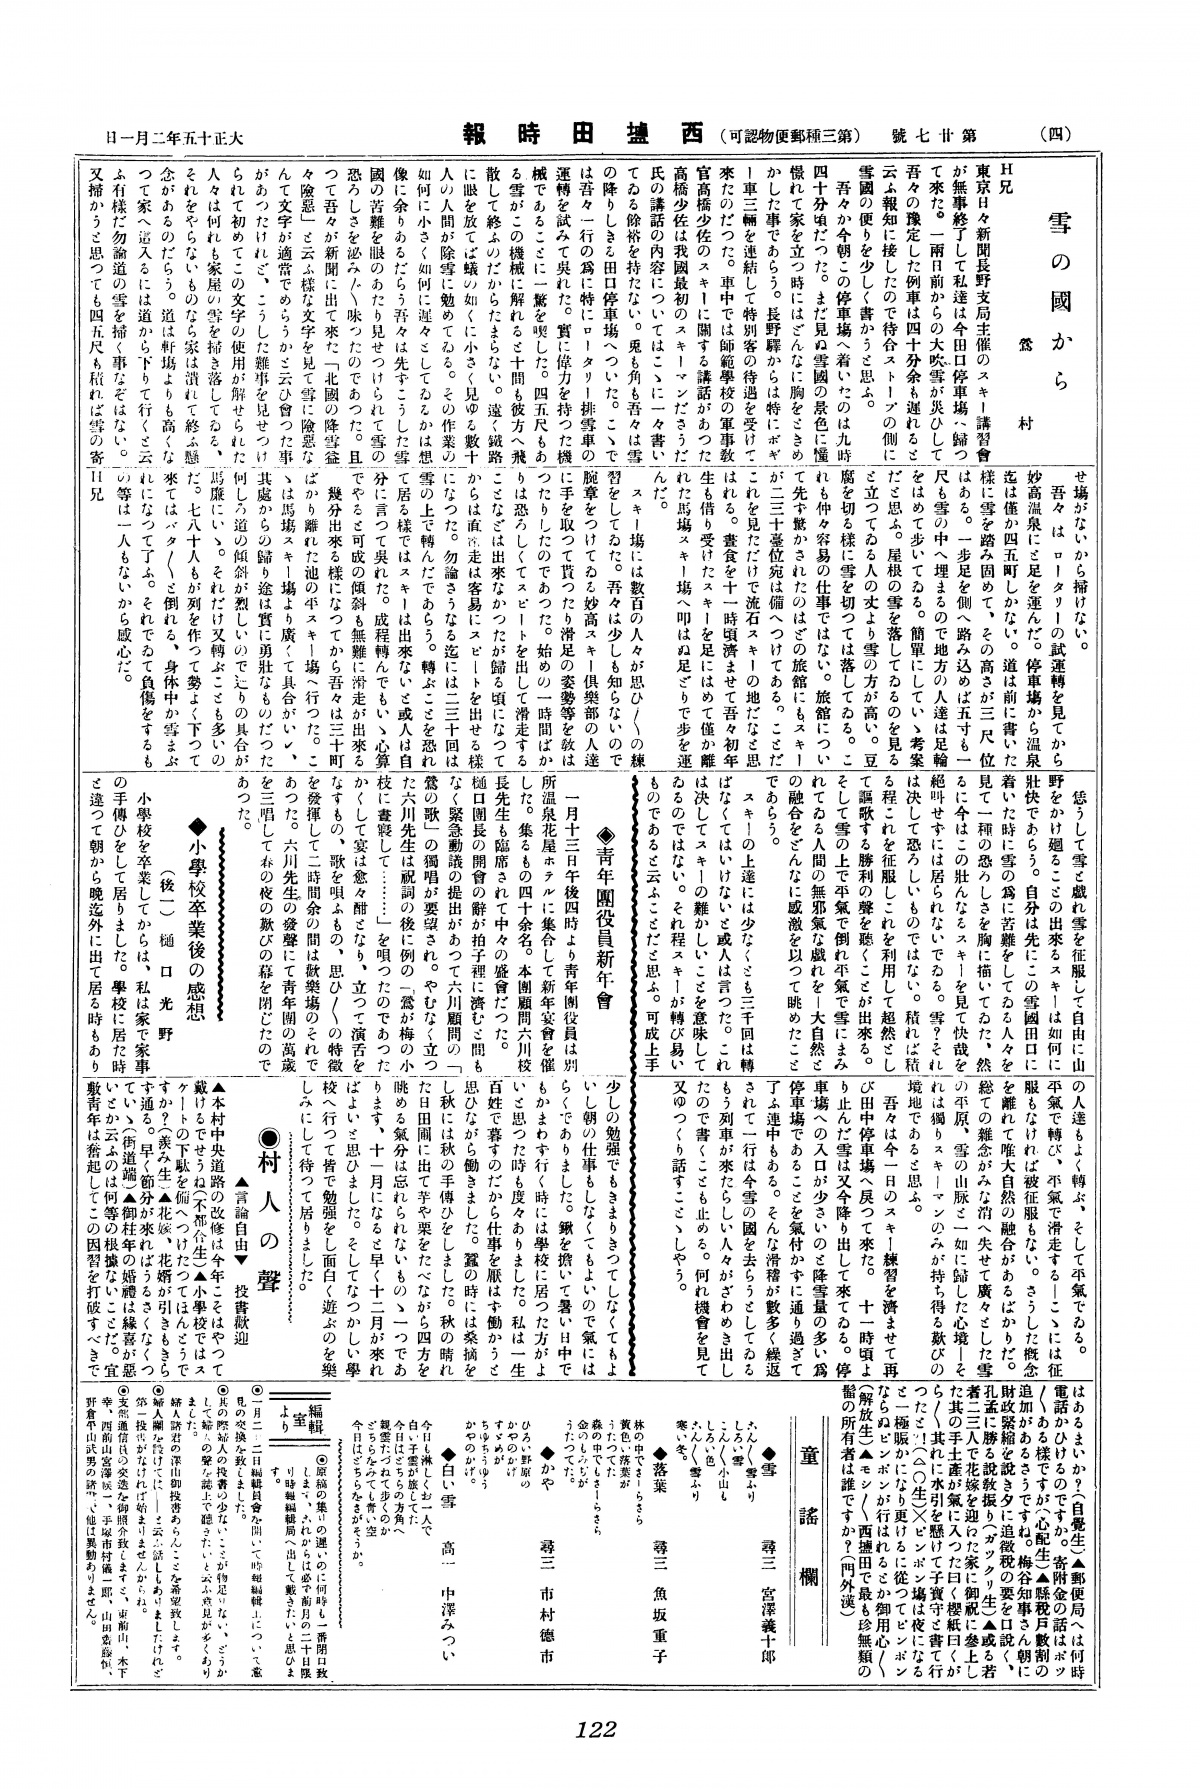 雪國 (『西塩田時報』第27号(1926年2月1日)4頁)